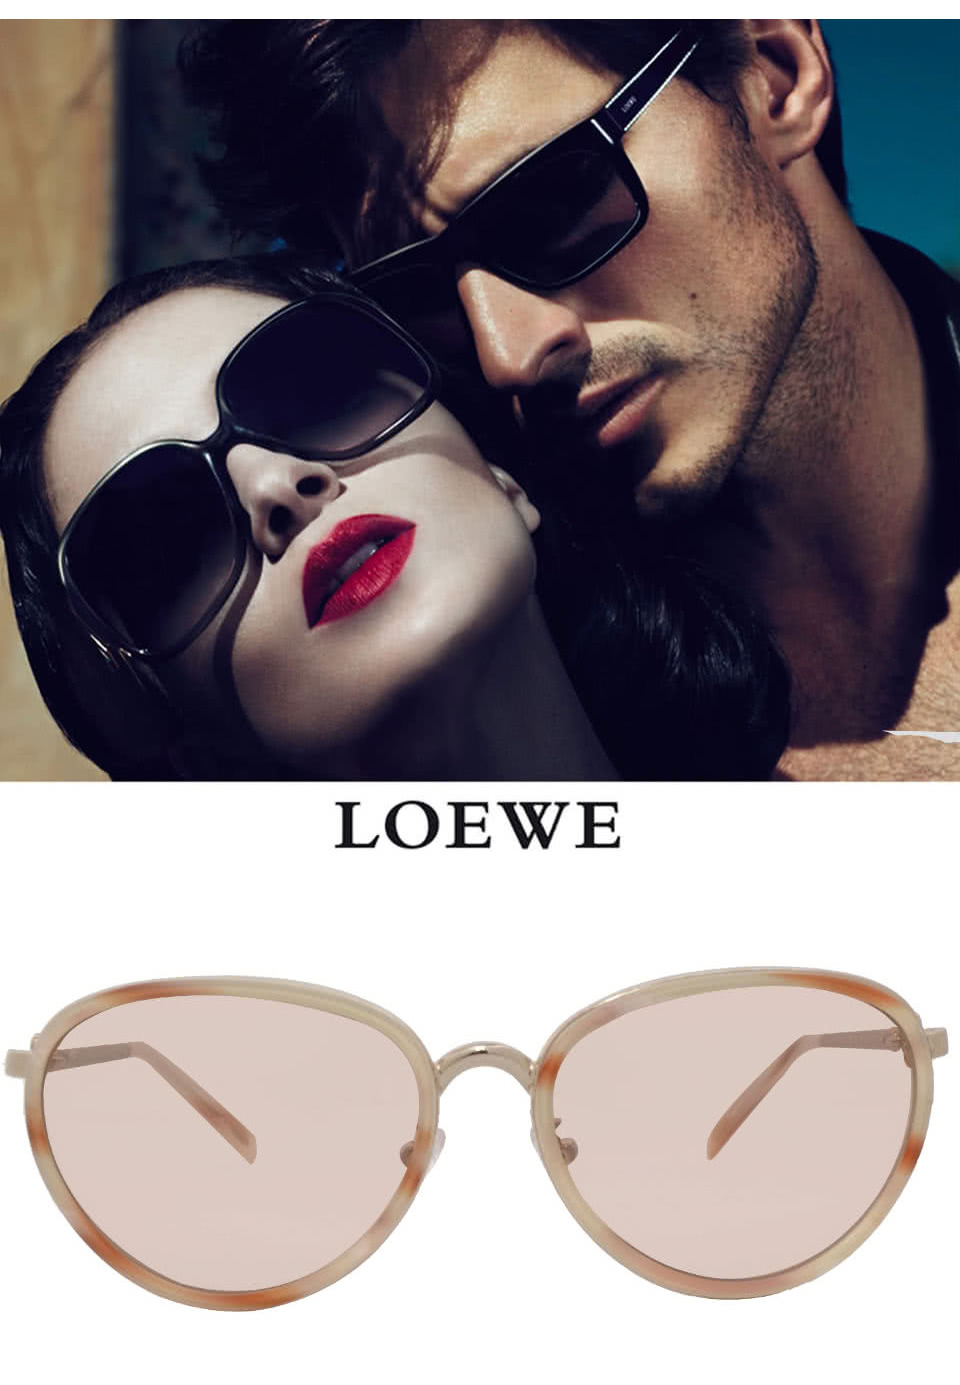 LOEWE 羅威 西班牙奢華訂製款-氣質細框型太陽眼鏡(白/